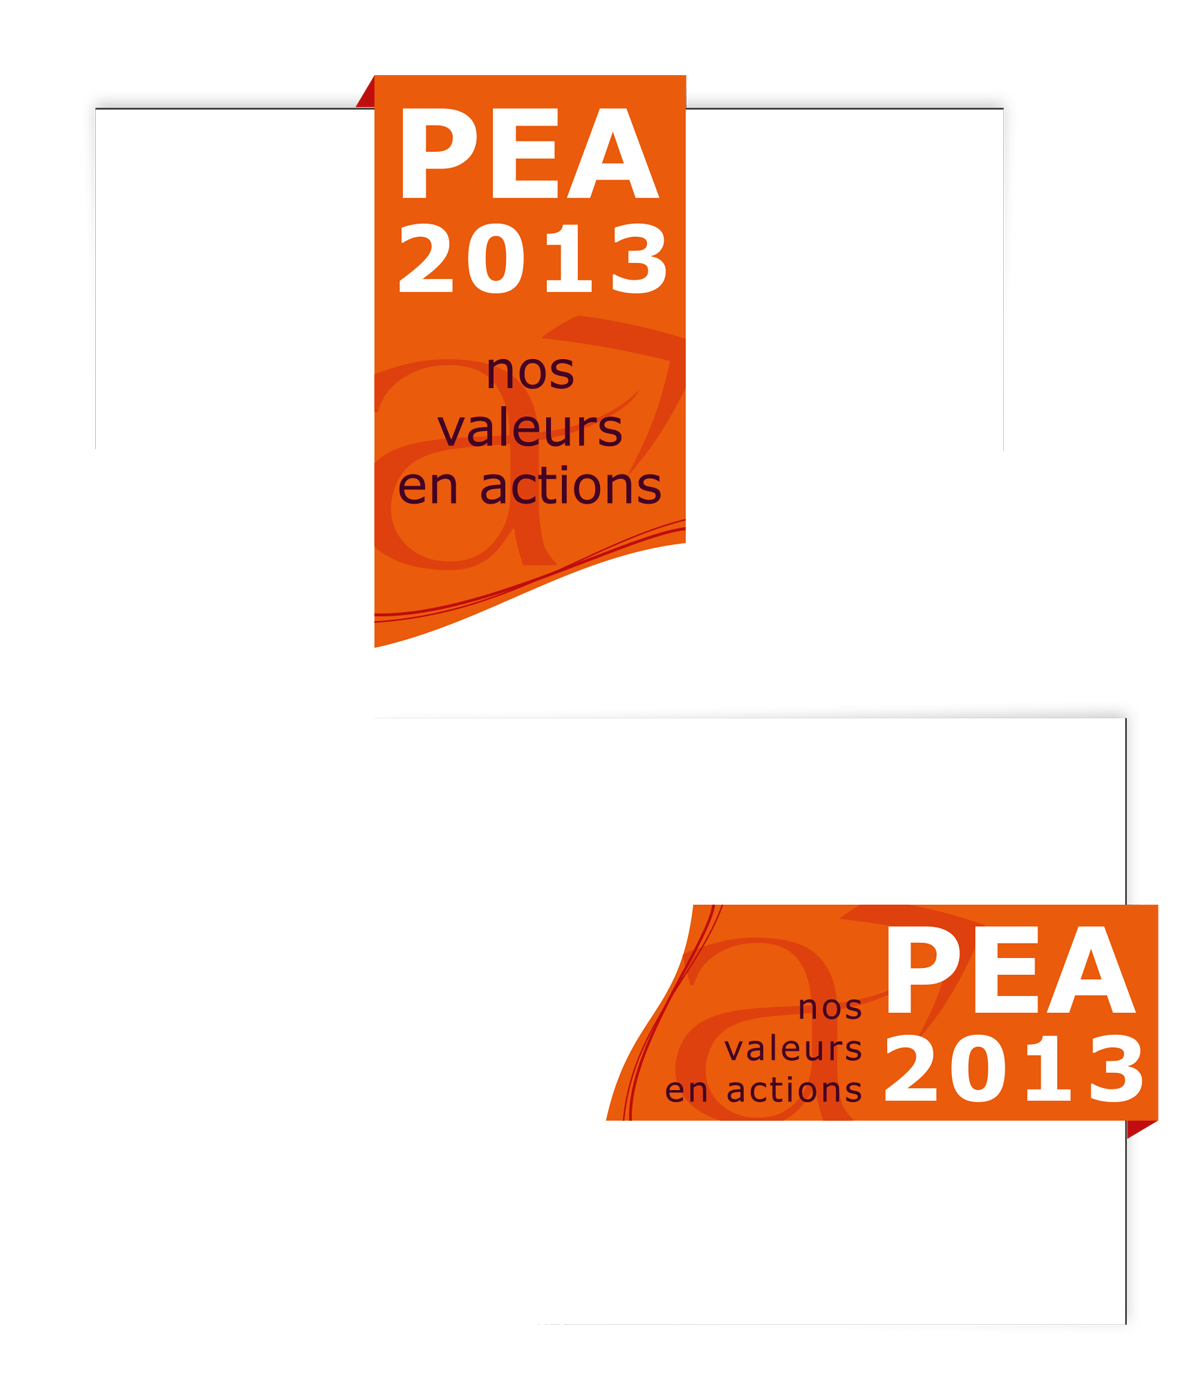 Identité visuelle créée pour le PEA 2013 de Coallia (Projet d'entreprise associative) par Caramel & Paprika - Versions verticale et horizontale de l'identifiant visuel